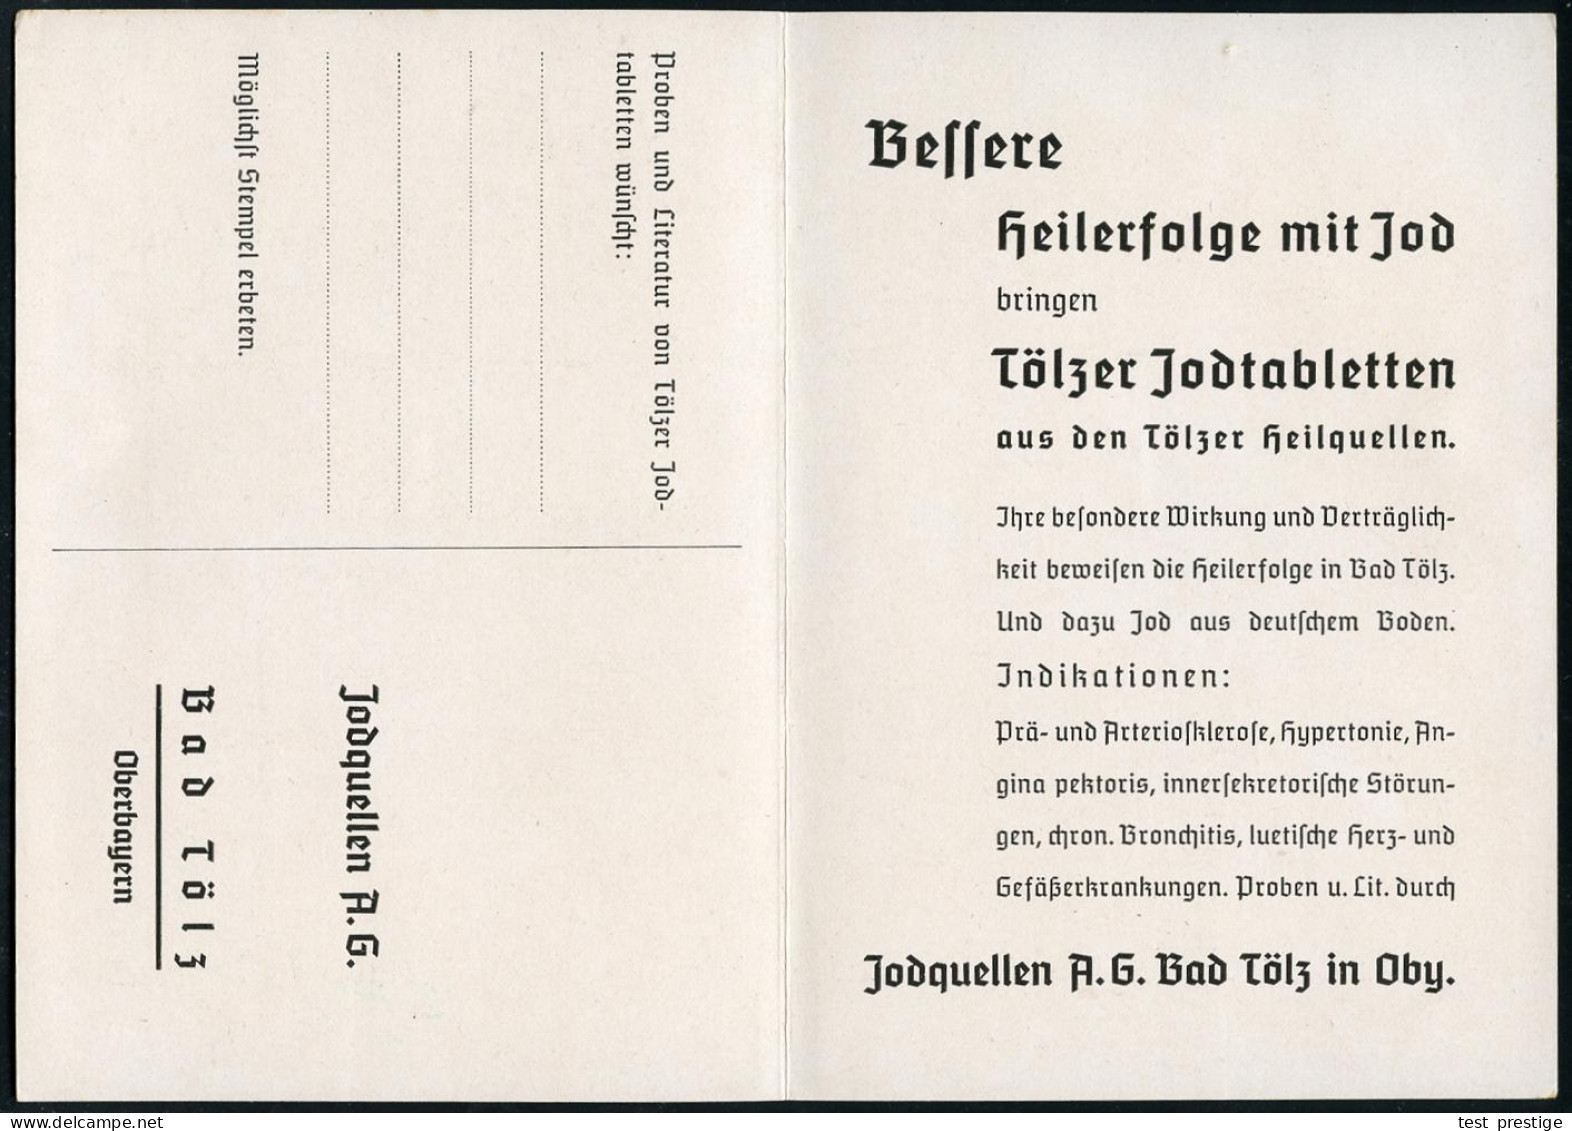 BAD TÖLZ/ *1*/ GEGEN/ ADERVER/ KALKUNG/ UND/ BLUTHOCHDRUCK../ KRANKENHEILER JODQUELLEN AG/ JOD-BAD TÖLZ.. 1936 (13.1.) S - Farmacia